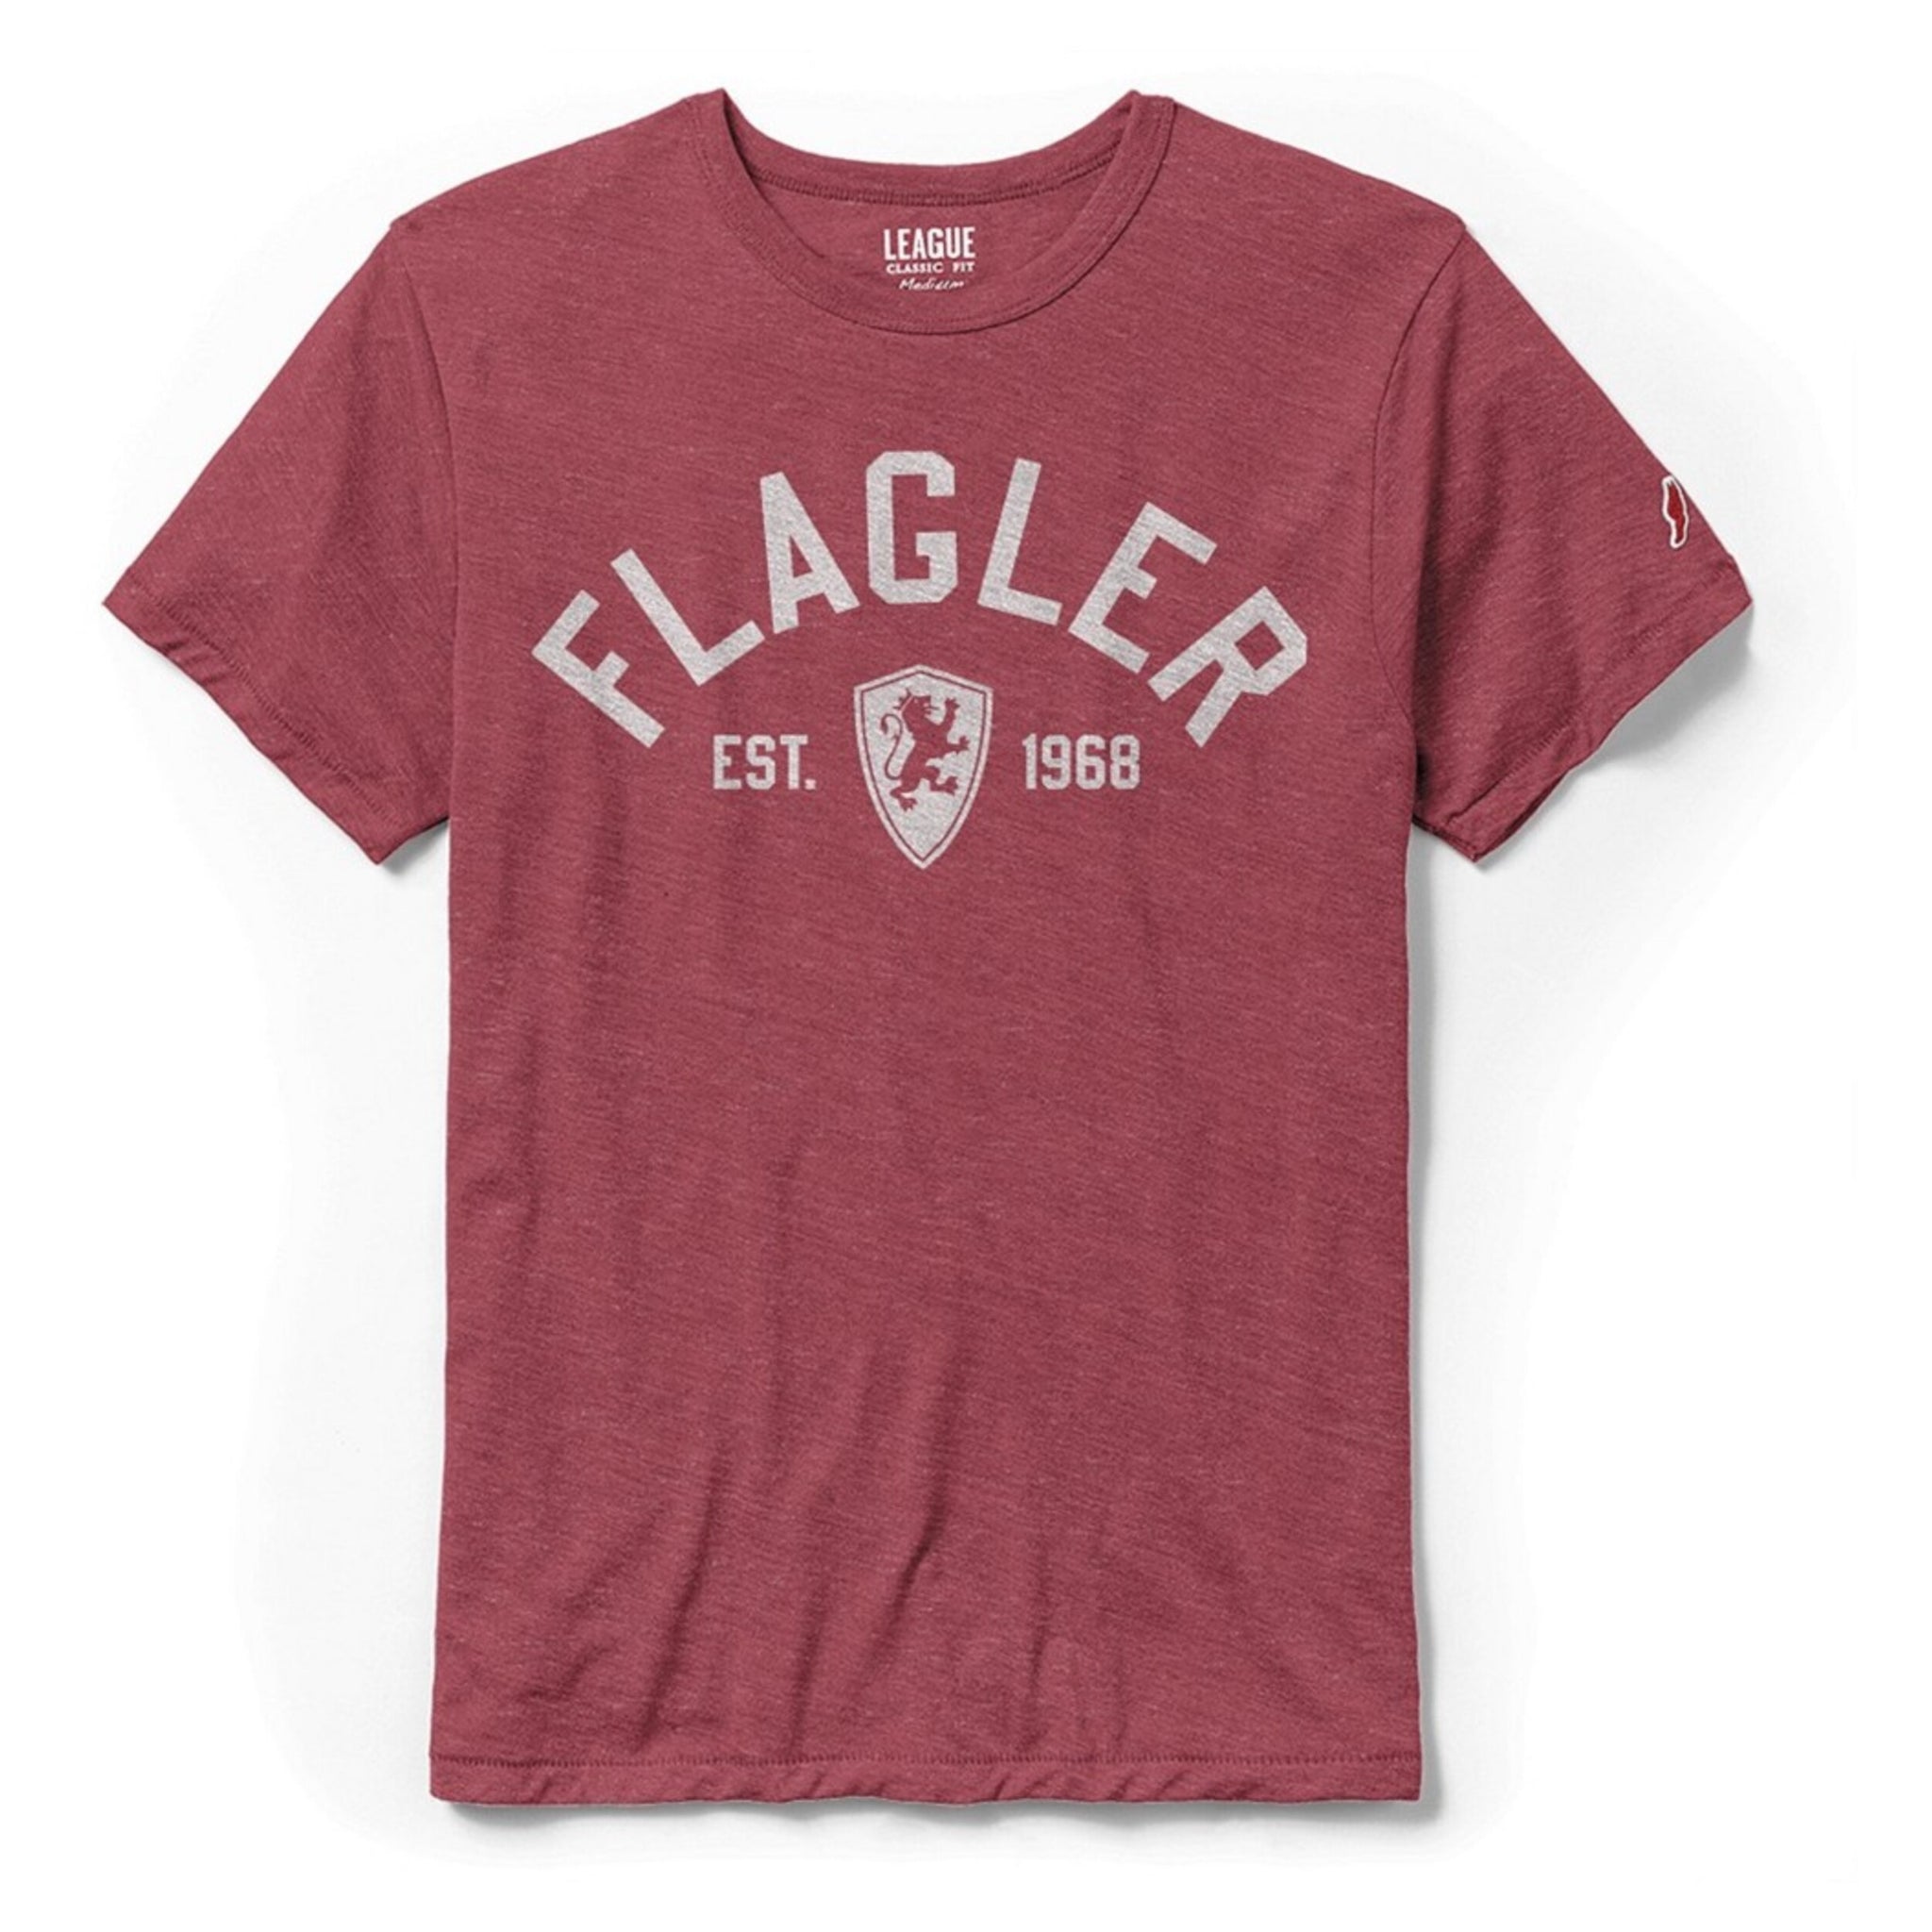 Flagler Est 1968 T-shirt